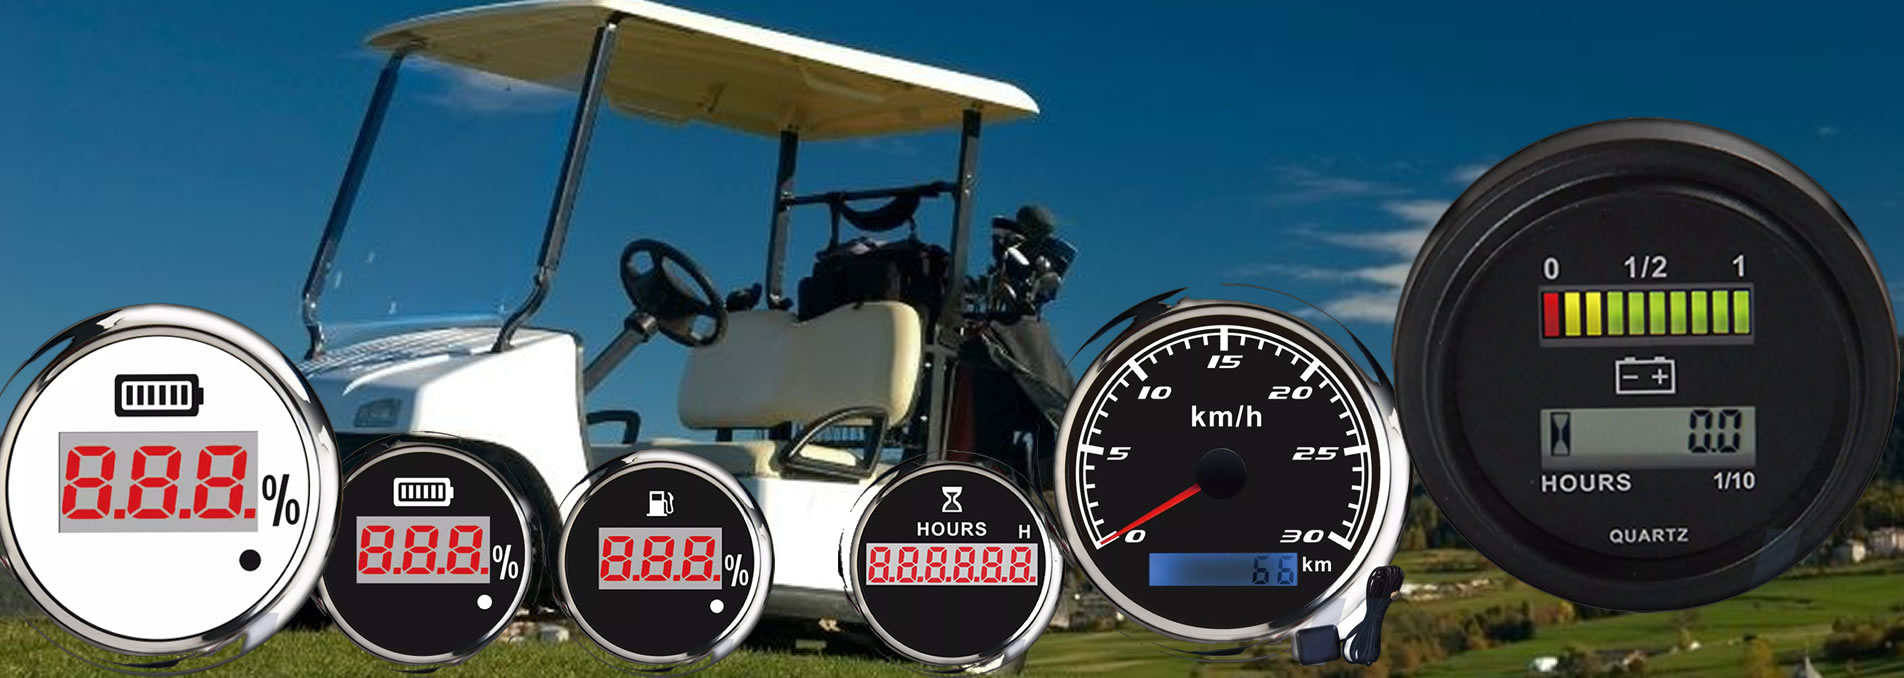 golf cart gauges banner